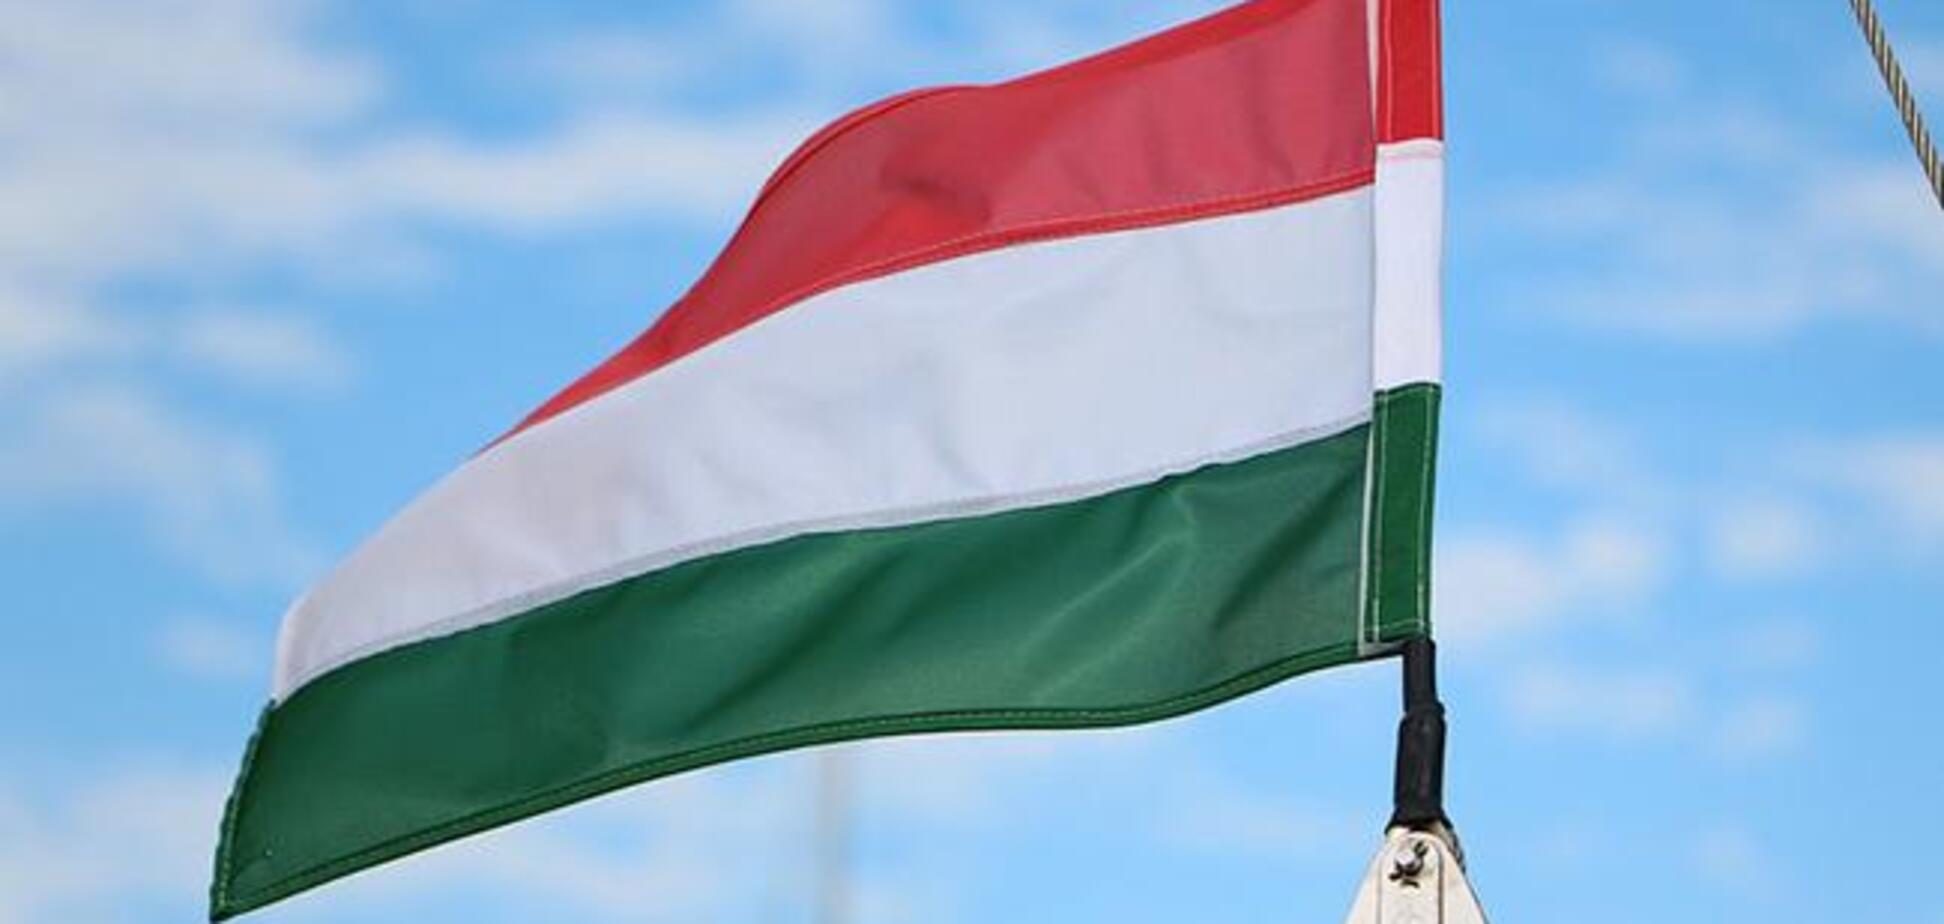 Мовне питання: угорська громада відмовилися від консультацій щодо скандального закону